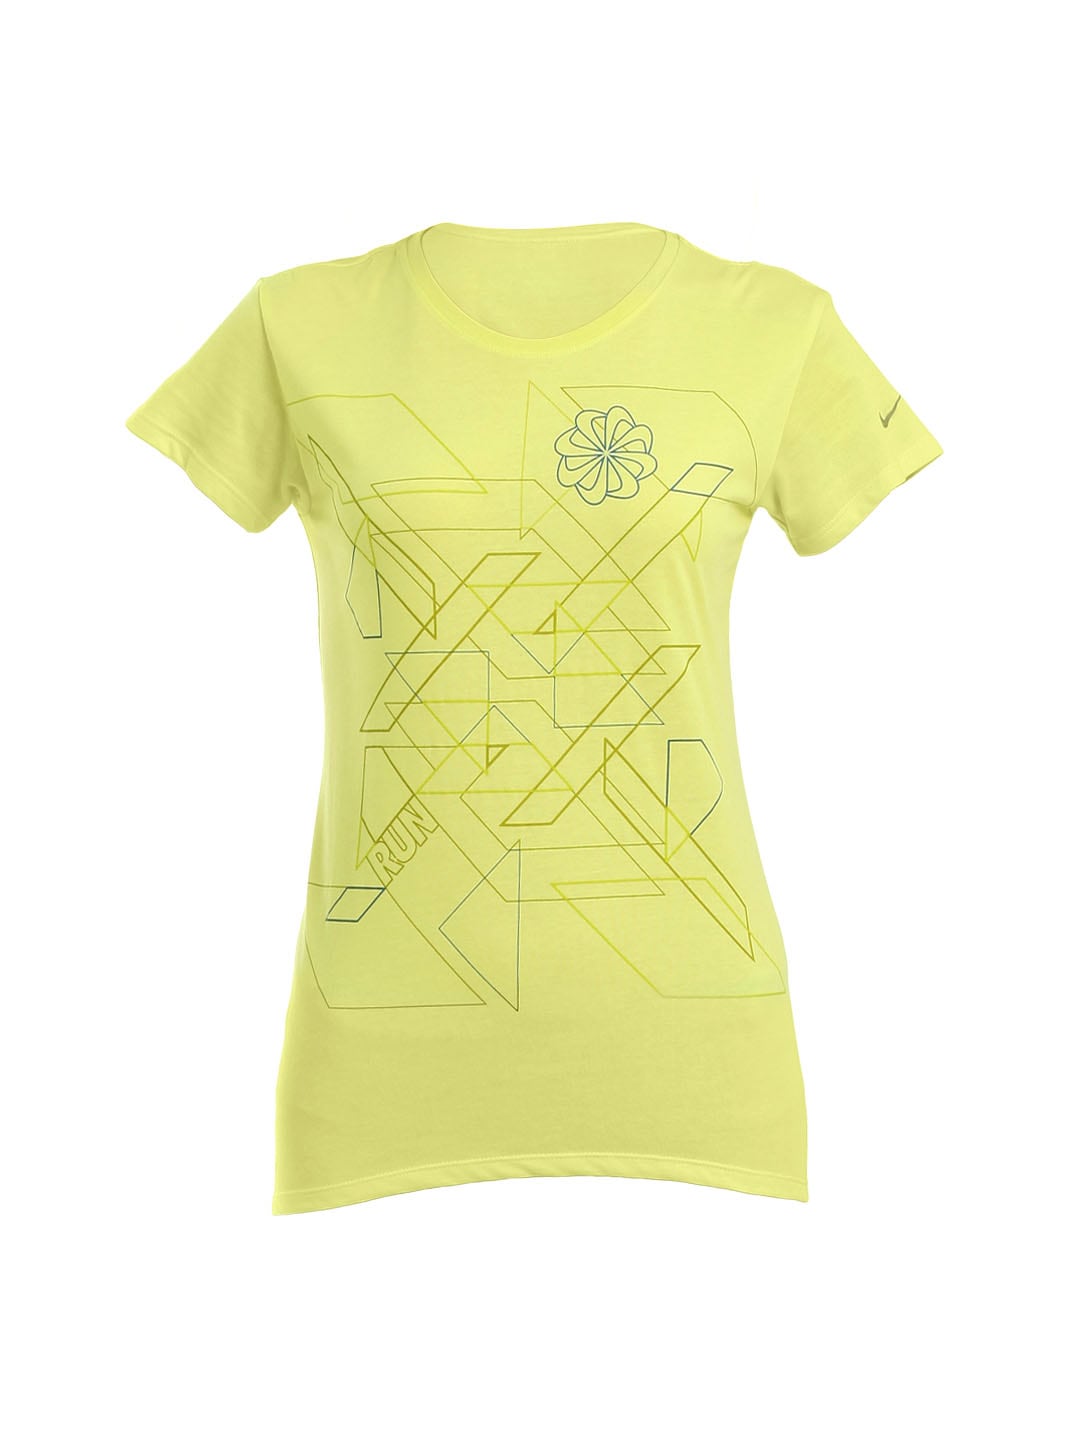 Nike Women Yellow T-shirt